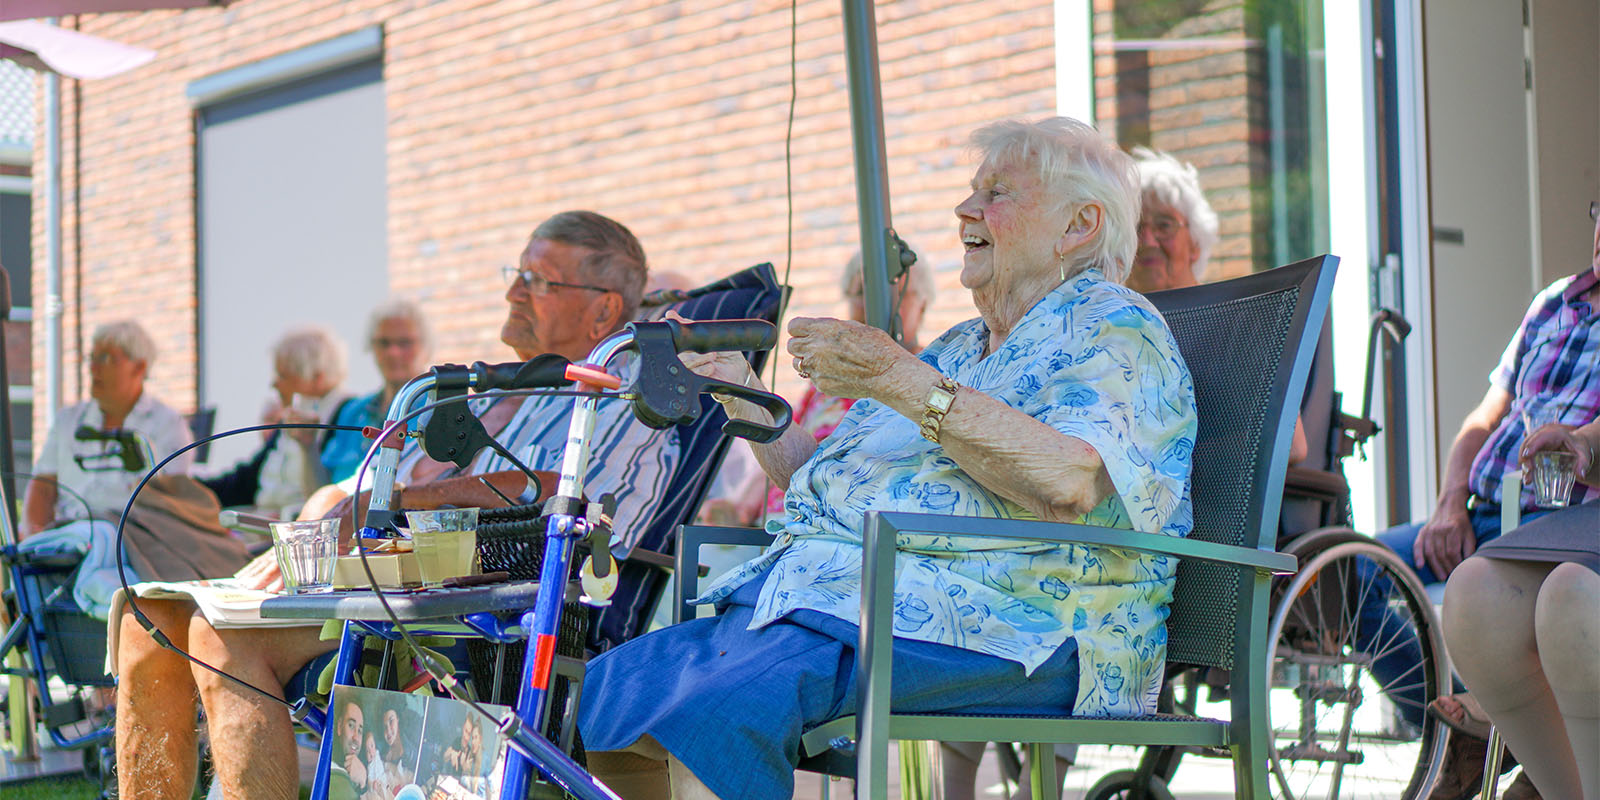 Foto ter illustratie bij het blog van specialist ouderengeneeskunde. Op de foto zit een aantal bewoners buiten in de zon, ze lijken te genieten van een voorstelling.